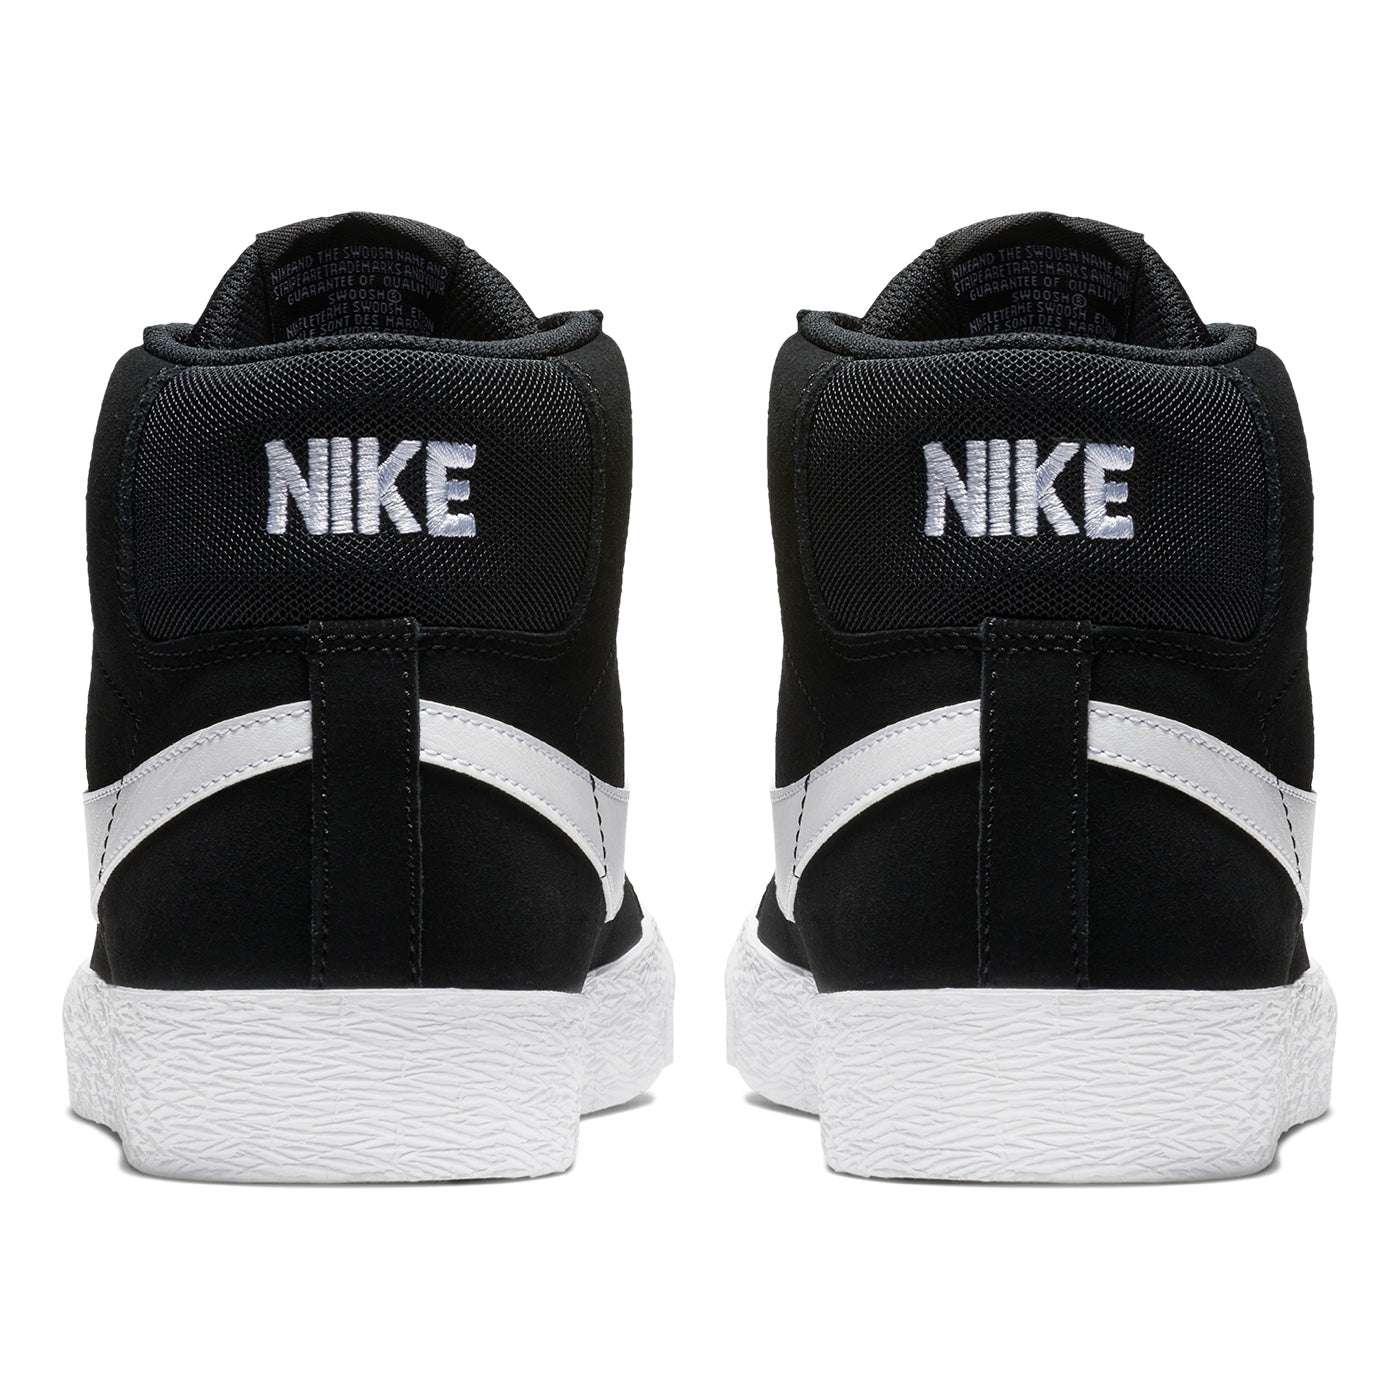 Nike SB Zoom Blazer Mid Shoes - Black/White